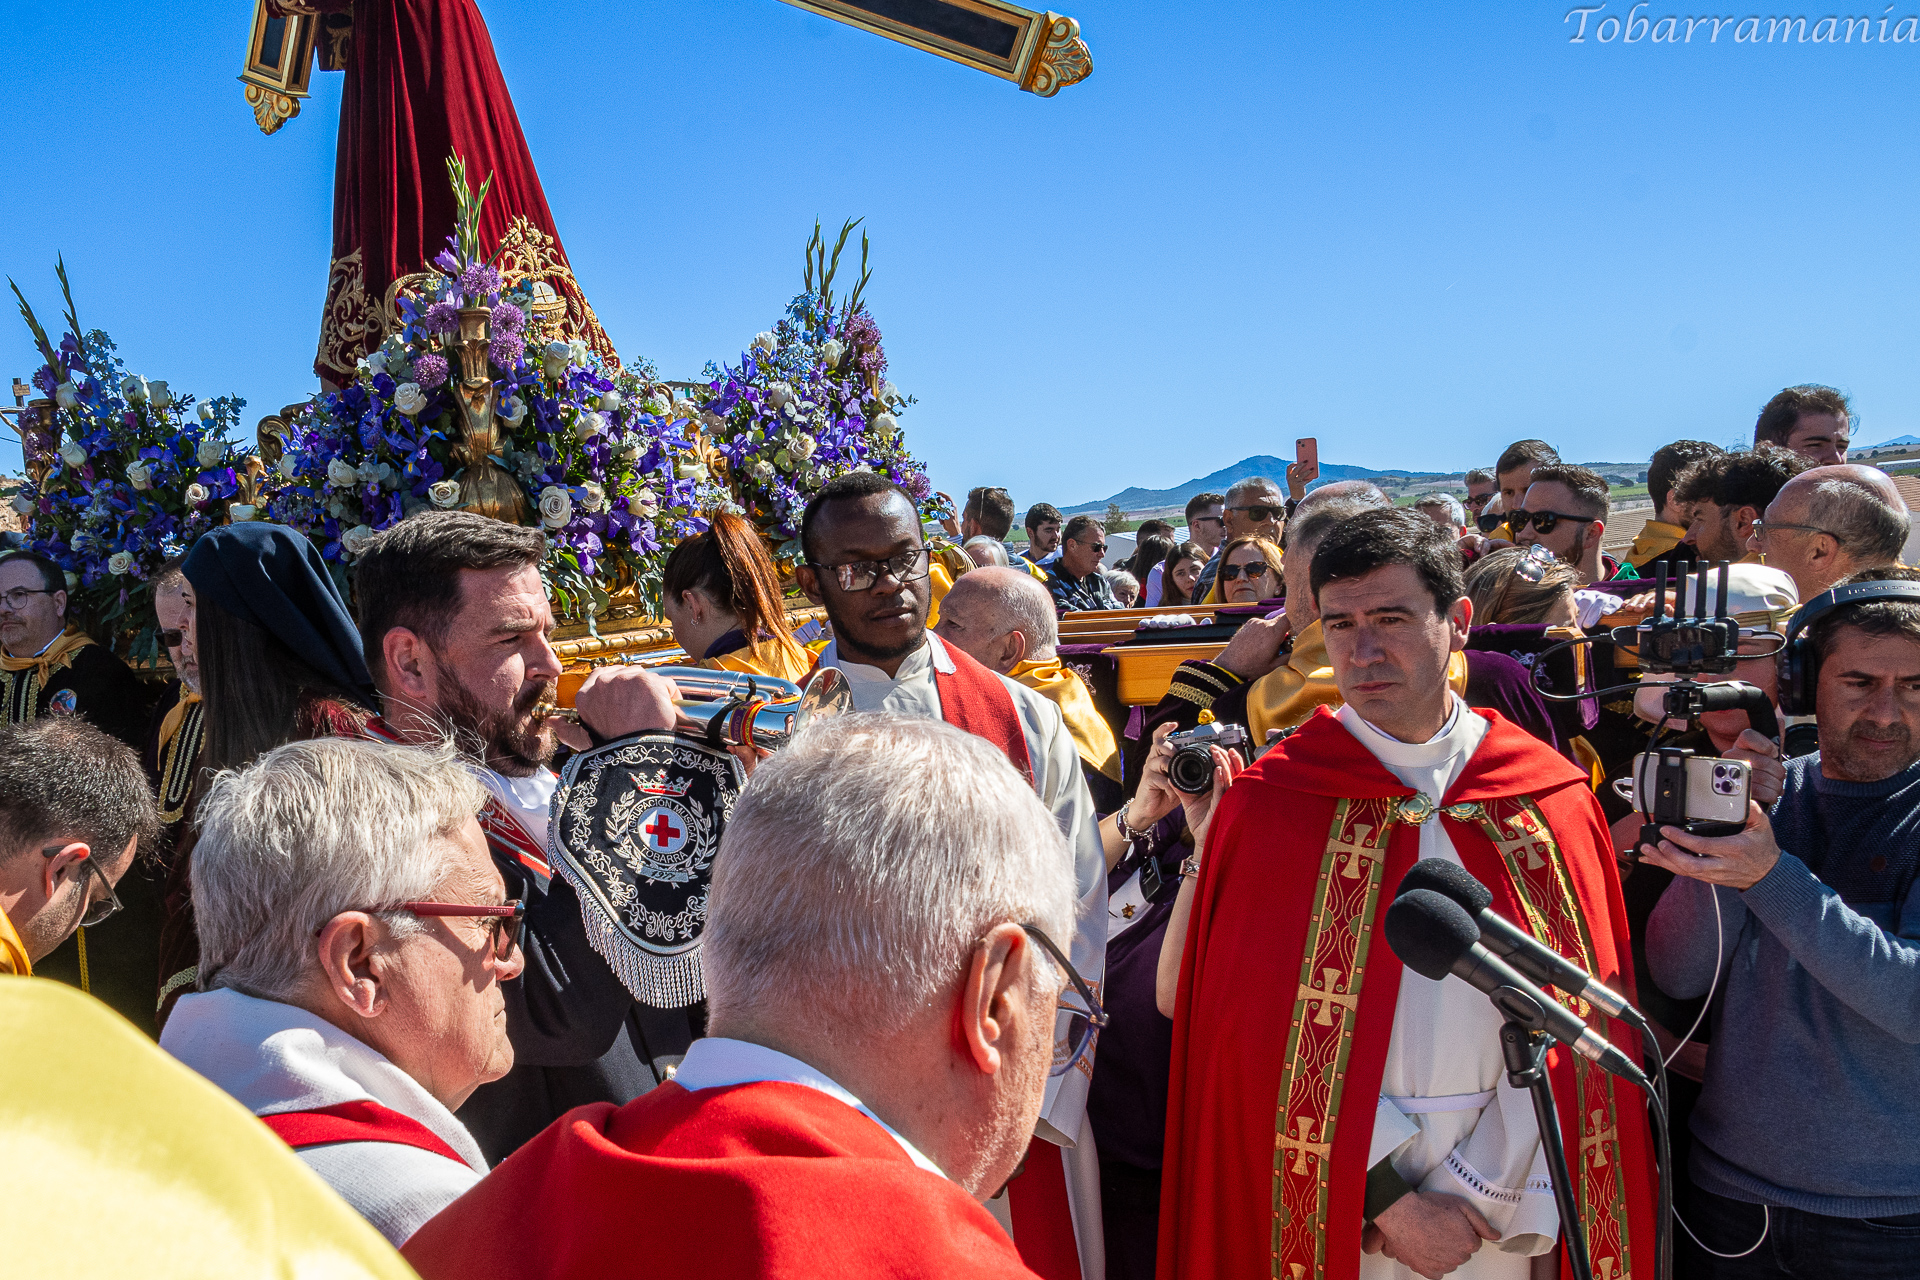 Un cornetin toca silencio en la cima del monte Calvario de Tobarra en la mañana de viernes santo de 2023. La Bendición de Nuestro Padre Jesús está a punto de comenzar.